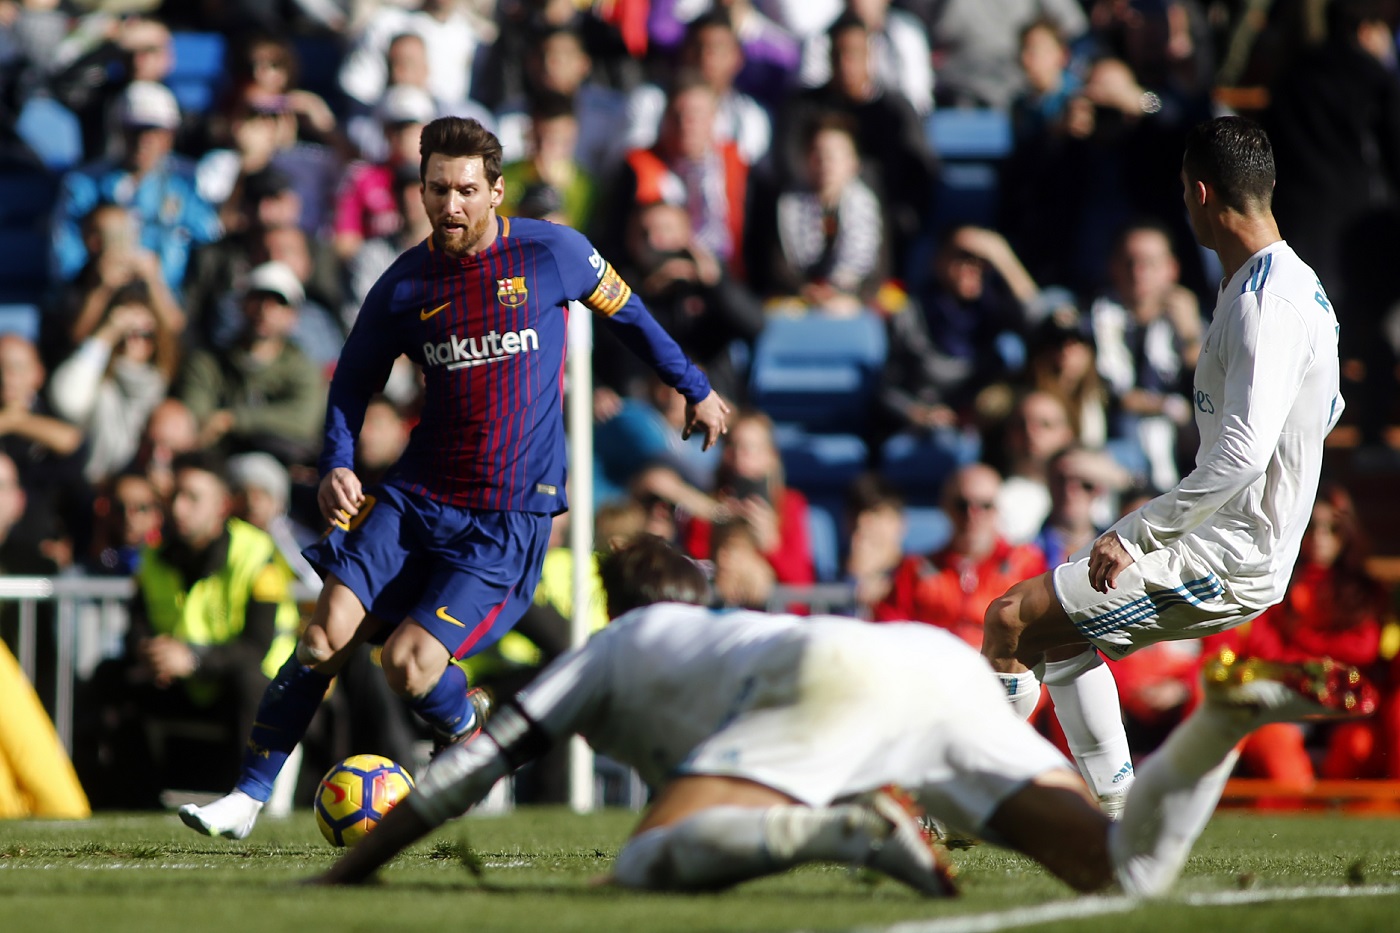 La pulga no deja de sorprendernos: Messi asistió tercer gol del barça descalzo (foto)